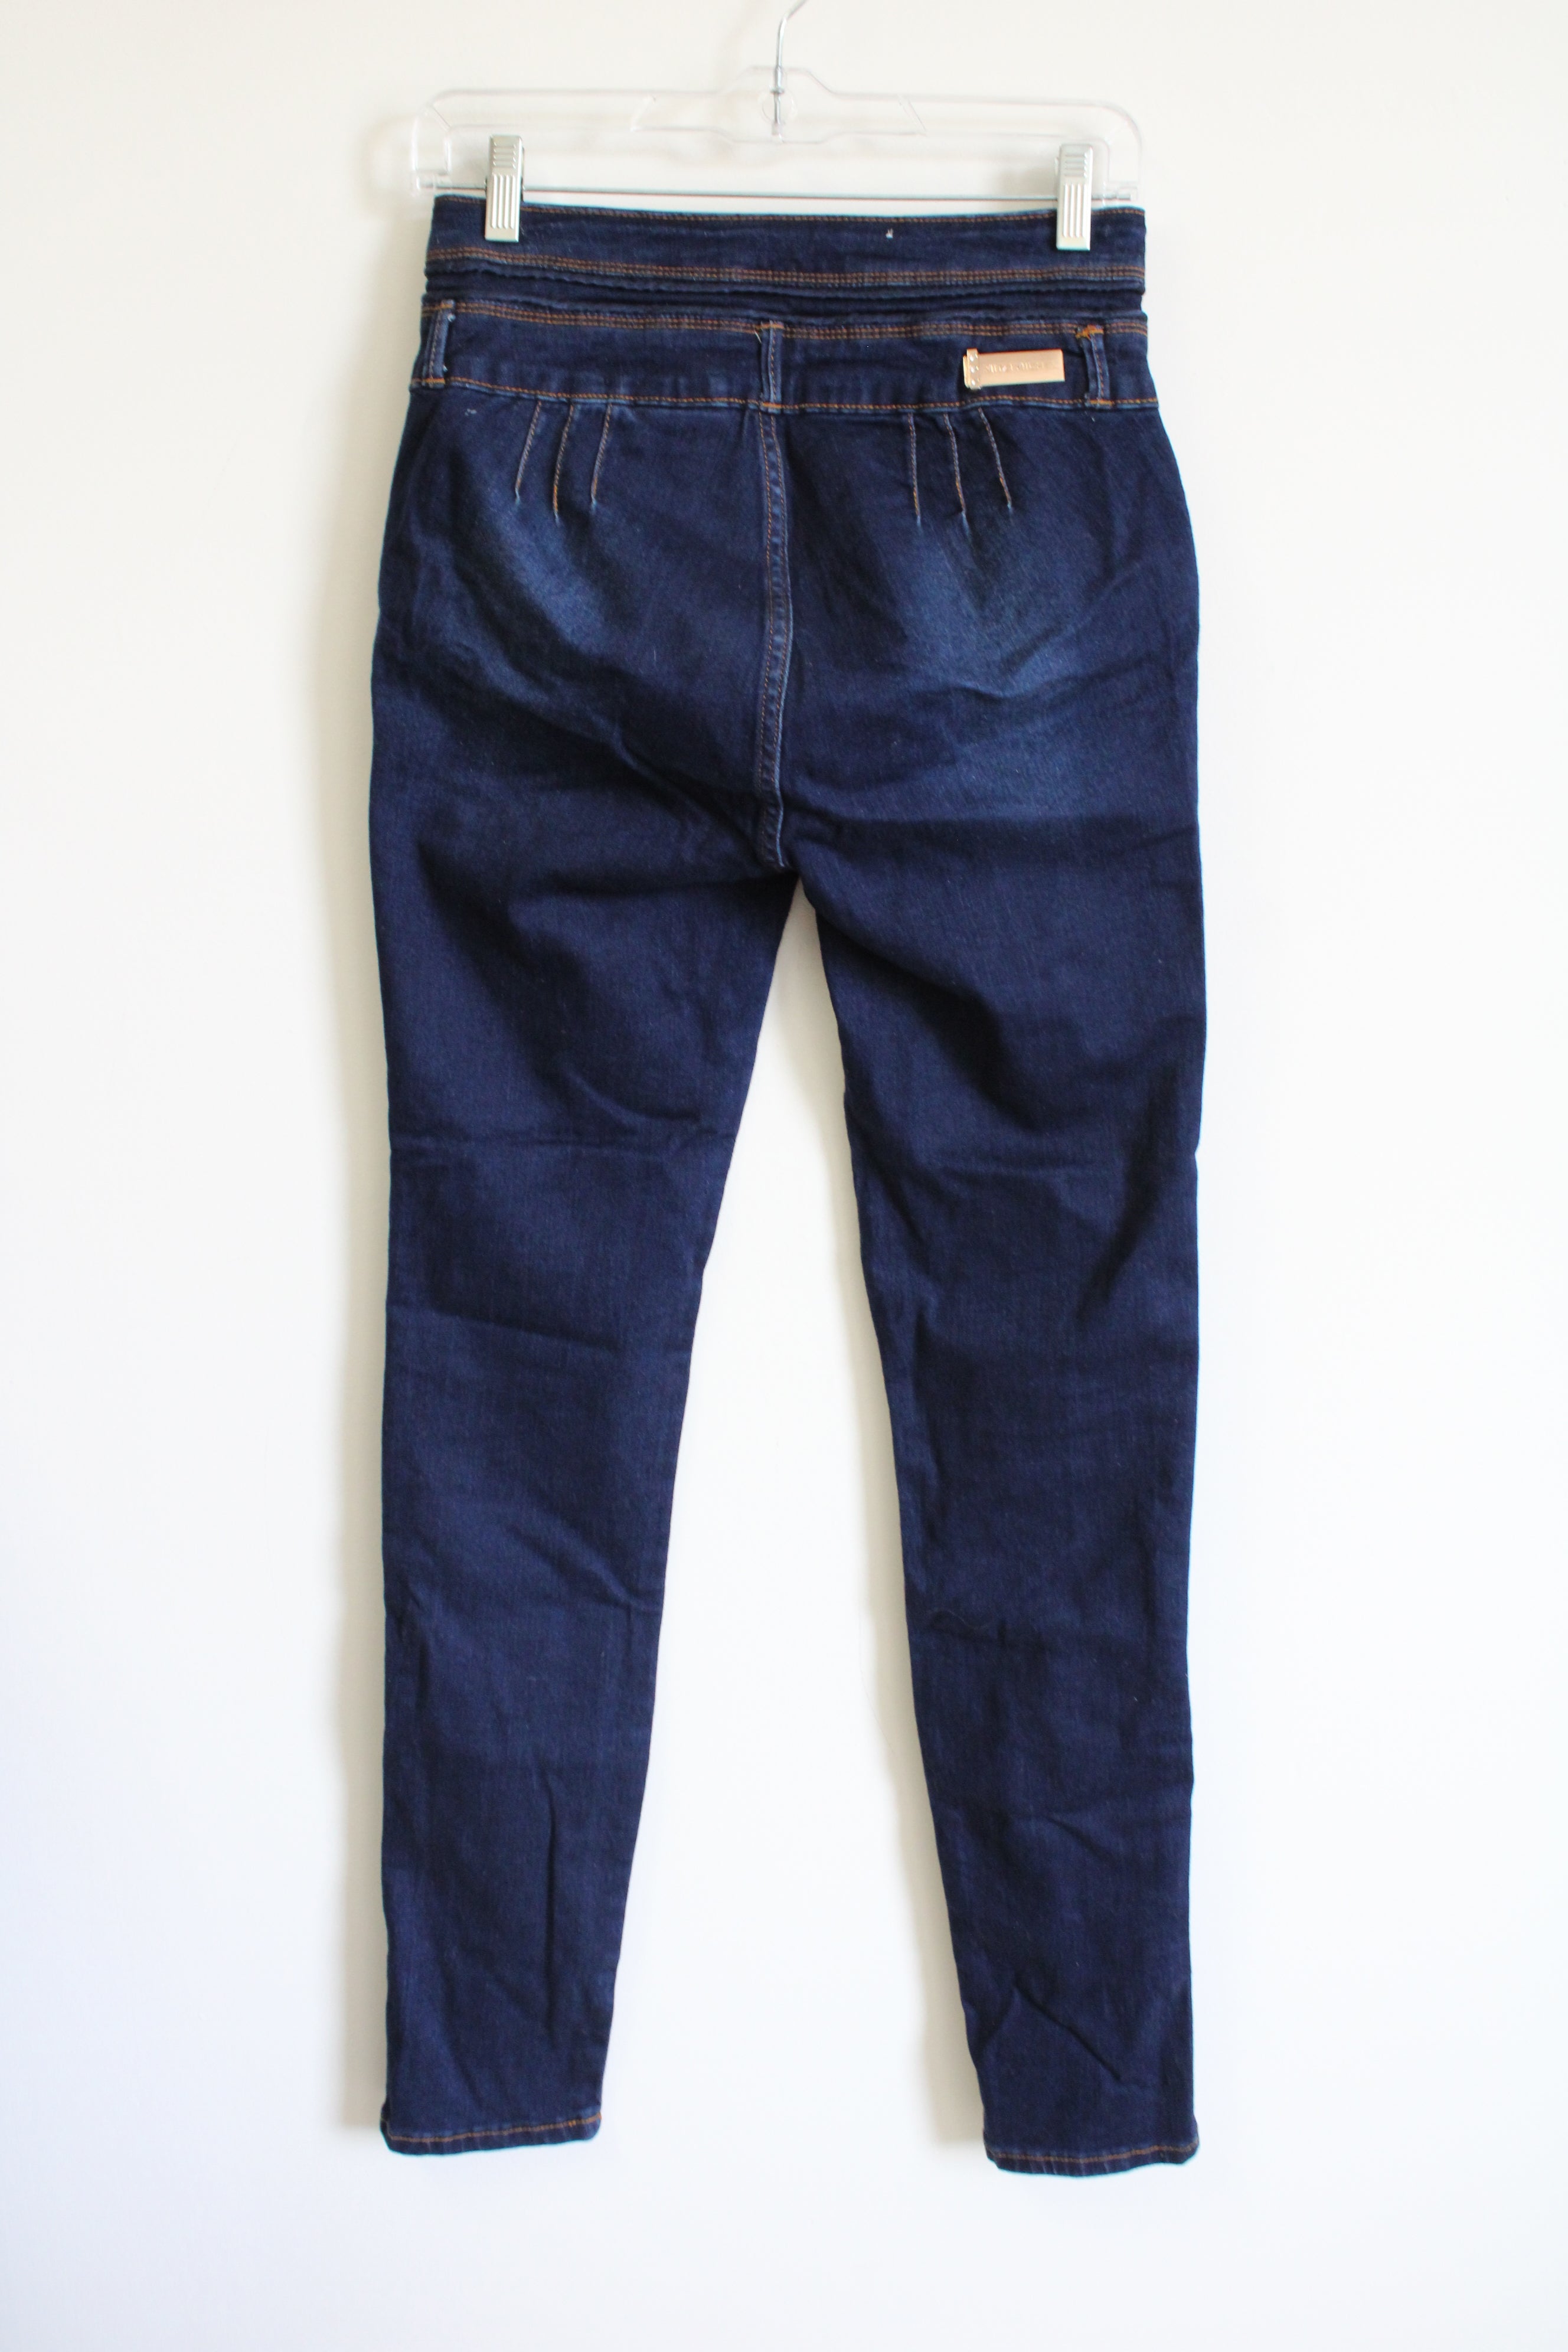 Mitzl Michel High Waisted Dark Wash Jeans | 9